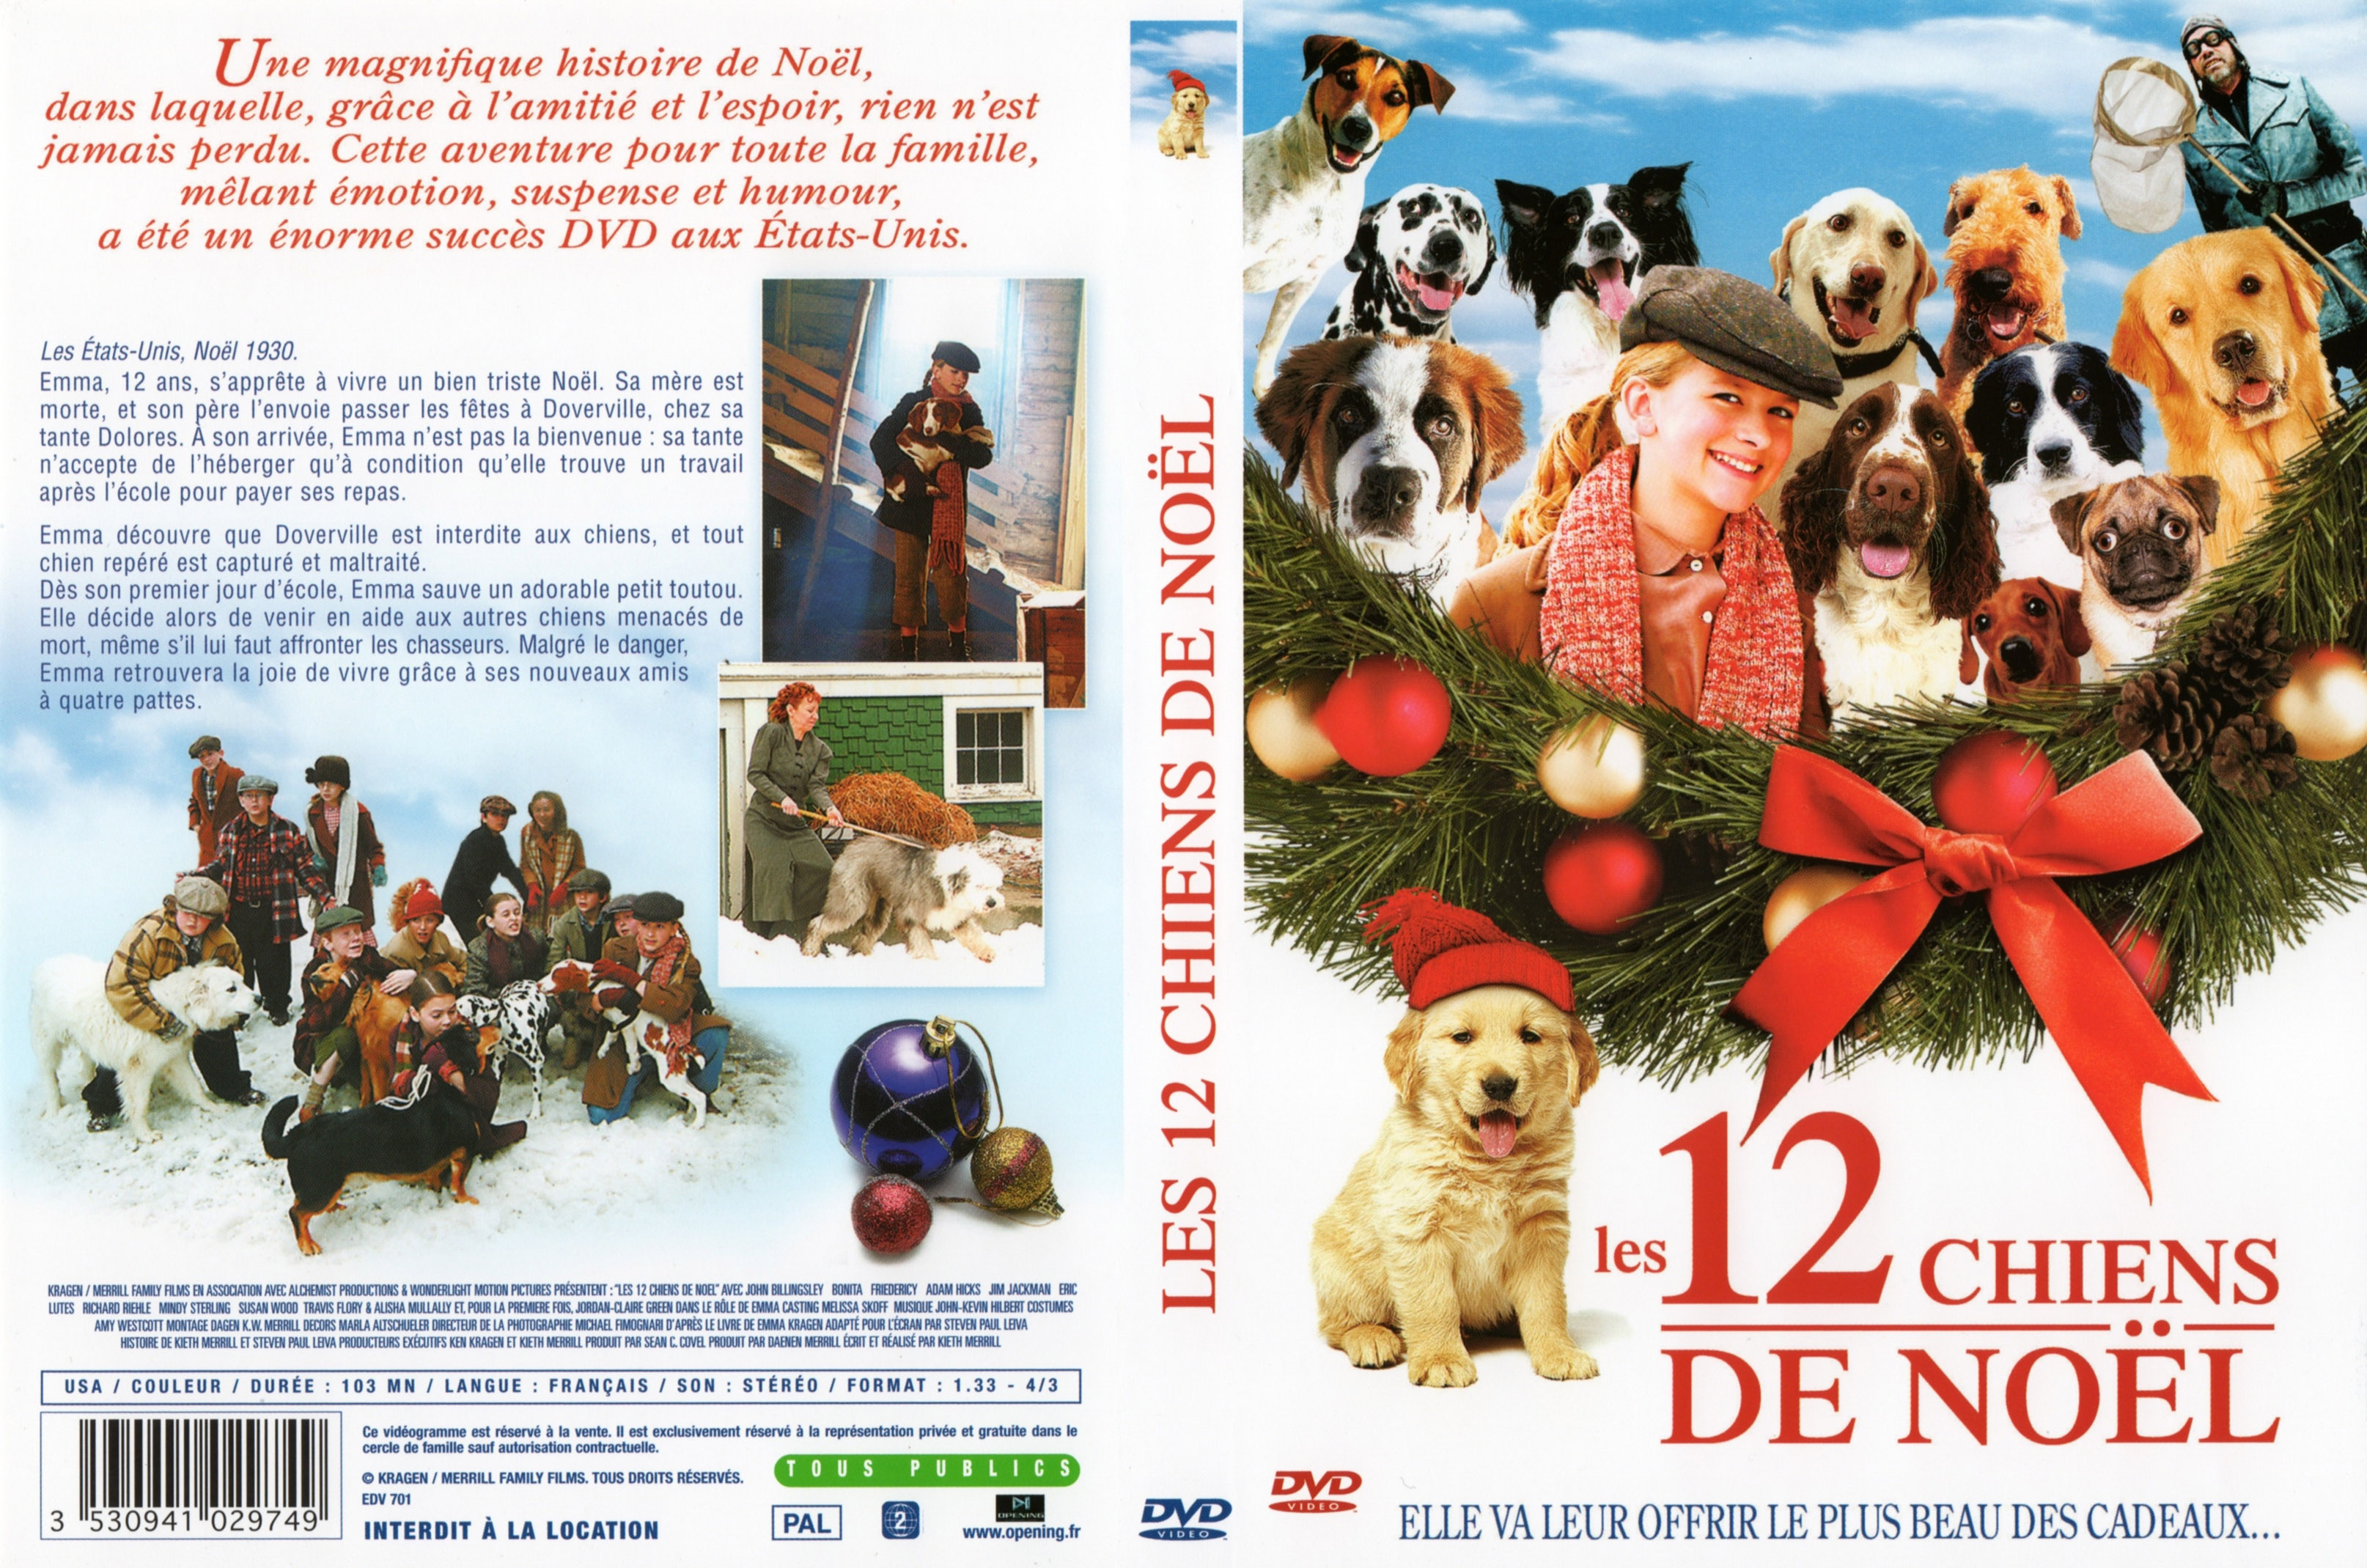 Jaquette DVD Les 12 chiens de Noel